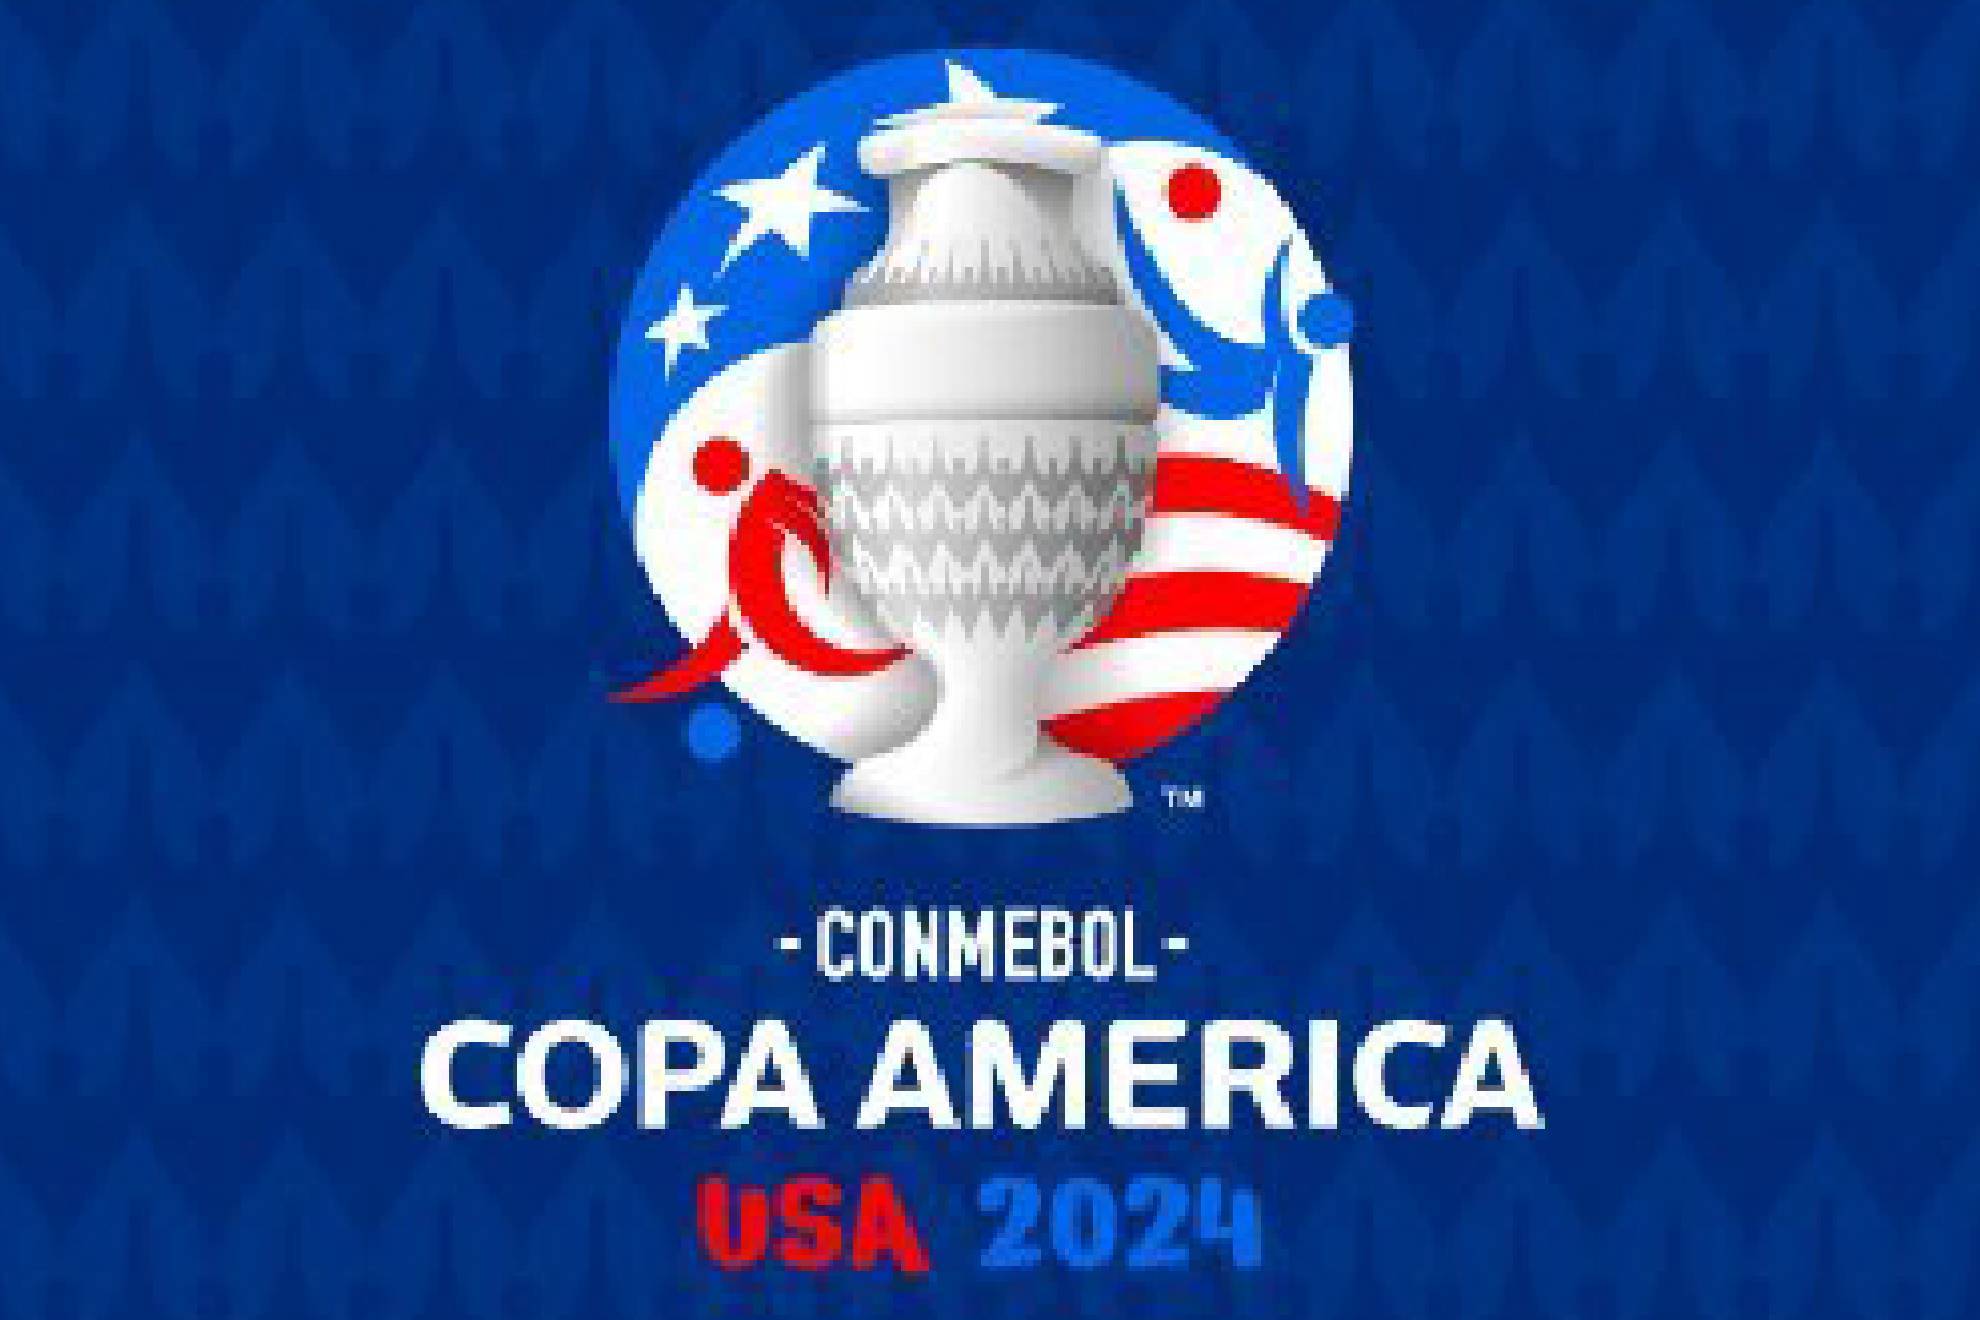 Mxico iniciar su andar en la Copa Amrica 2024 el prximo 22 de junio